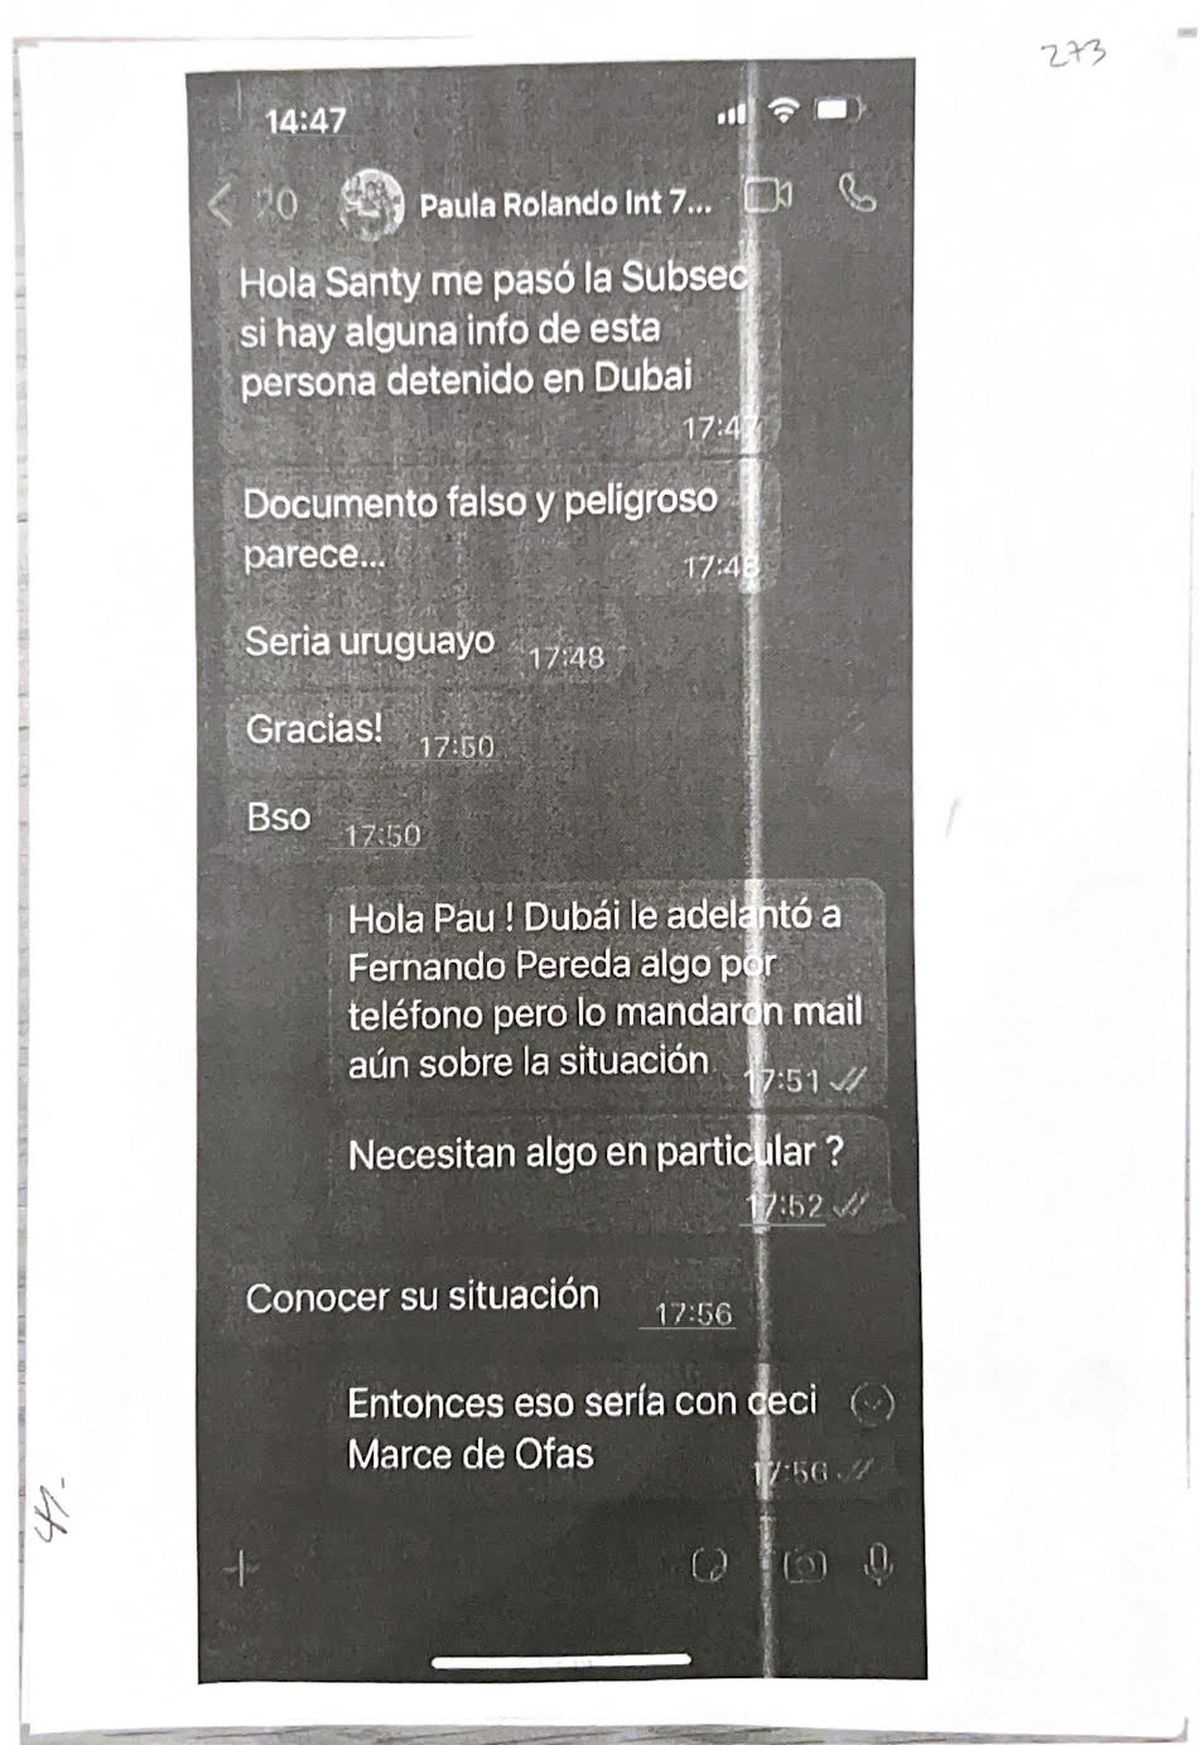 CHATS EXCLUSIVOS: WhatsApp entre Paula Rolando (secretaria de Ache) y Santiago Vitale (Asuntos Consulares) 03/11/2021.